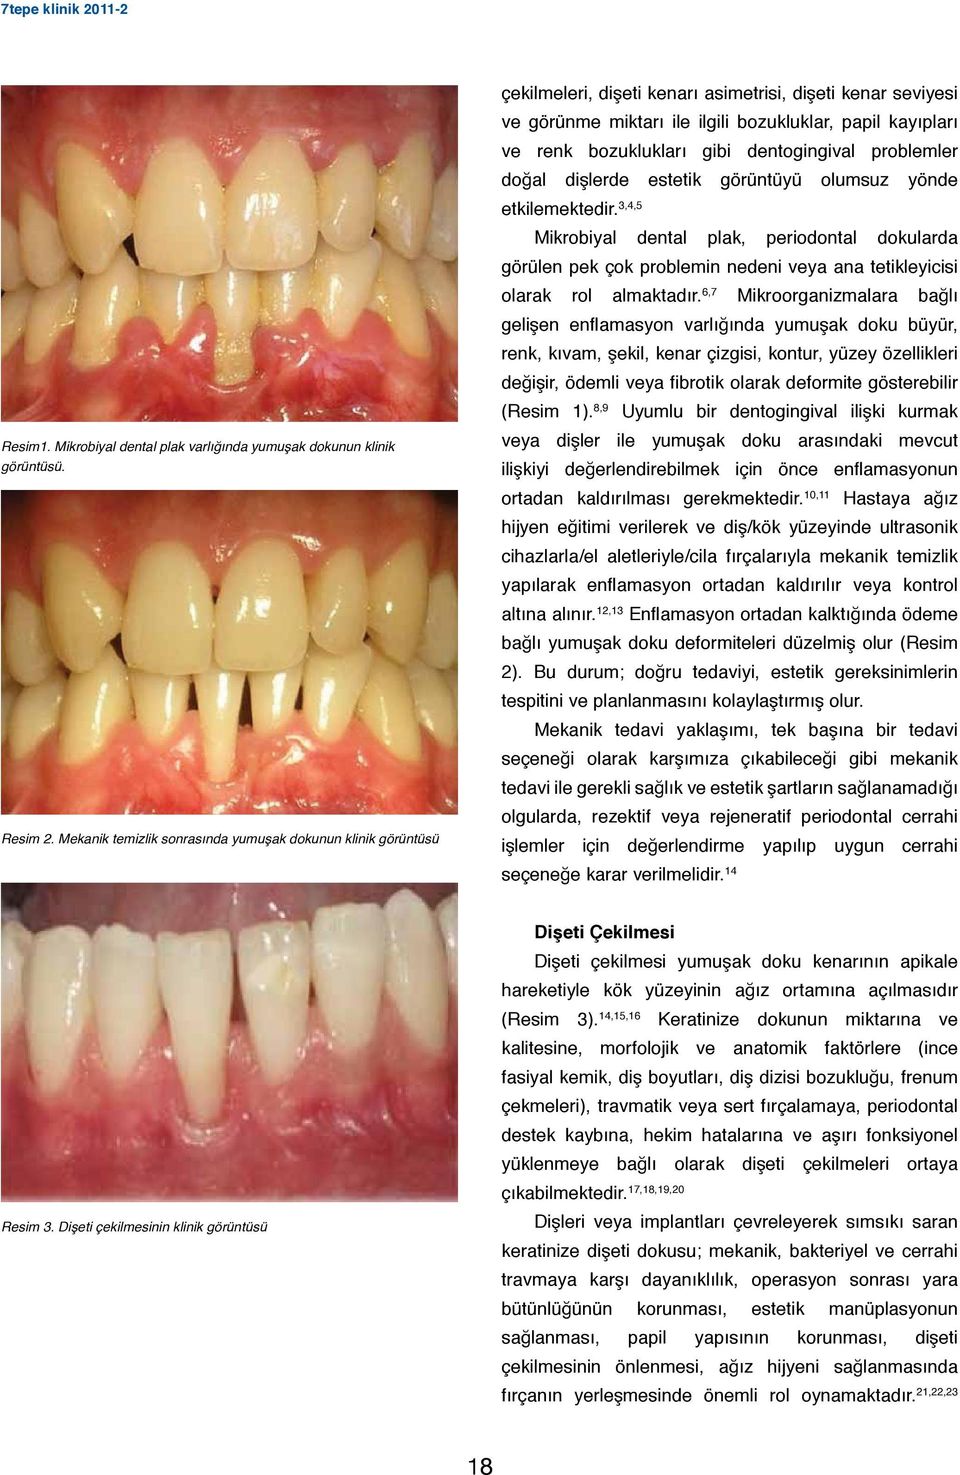 bozuklukları gibi dentogingival problemler doğal dişlerde estetik görüntüyü olumsuz yönde etkilemektedir.